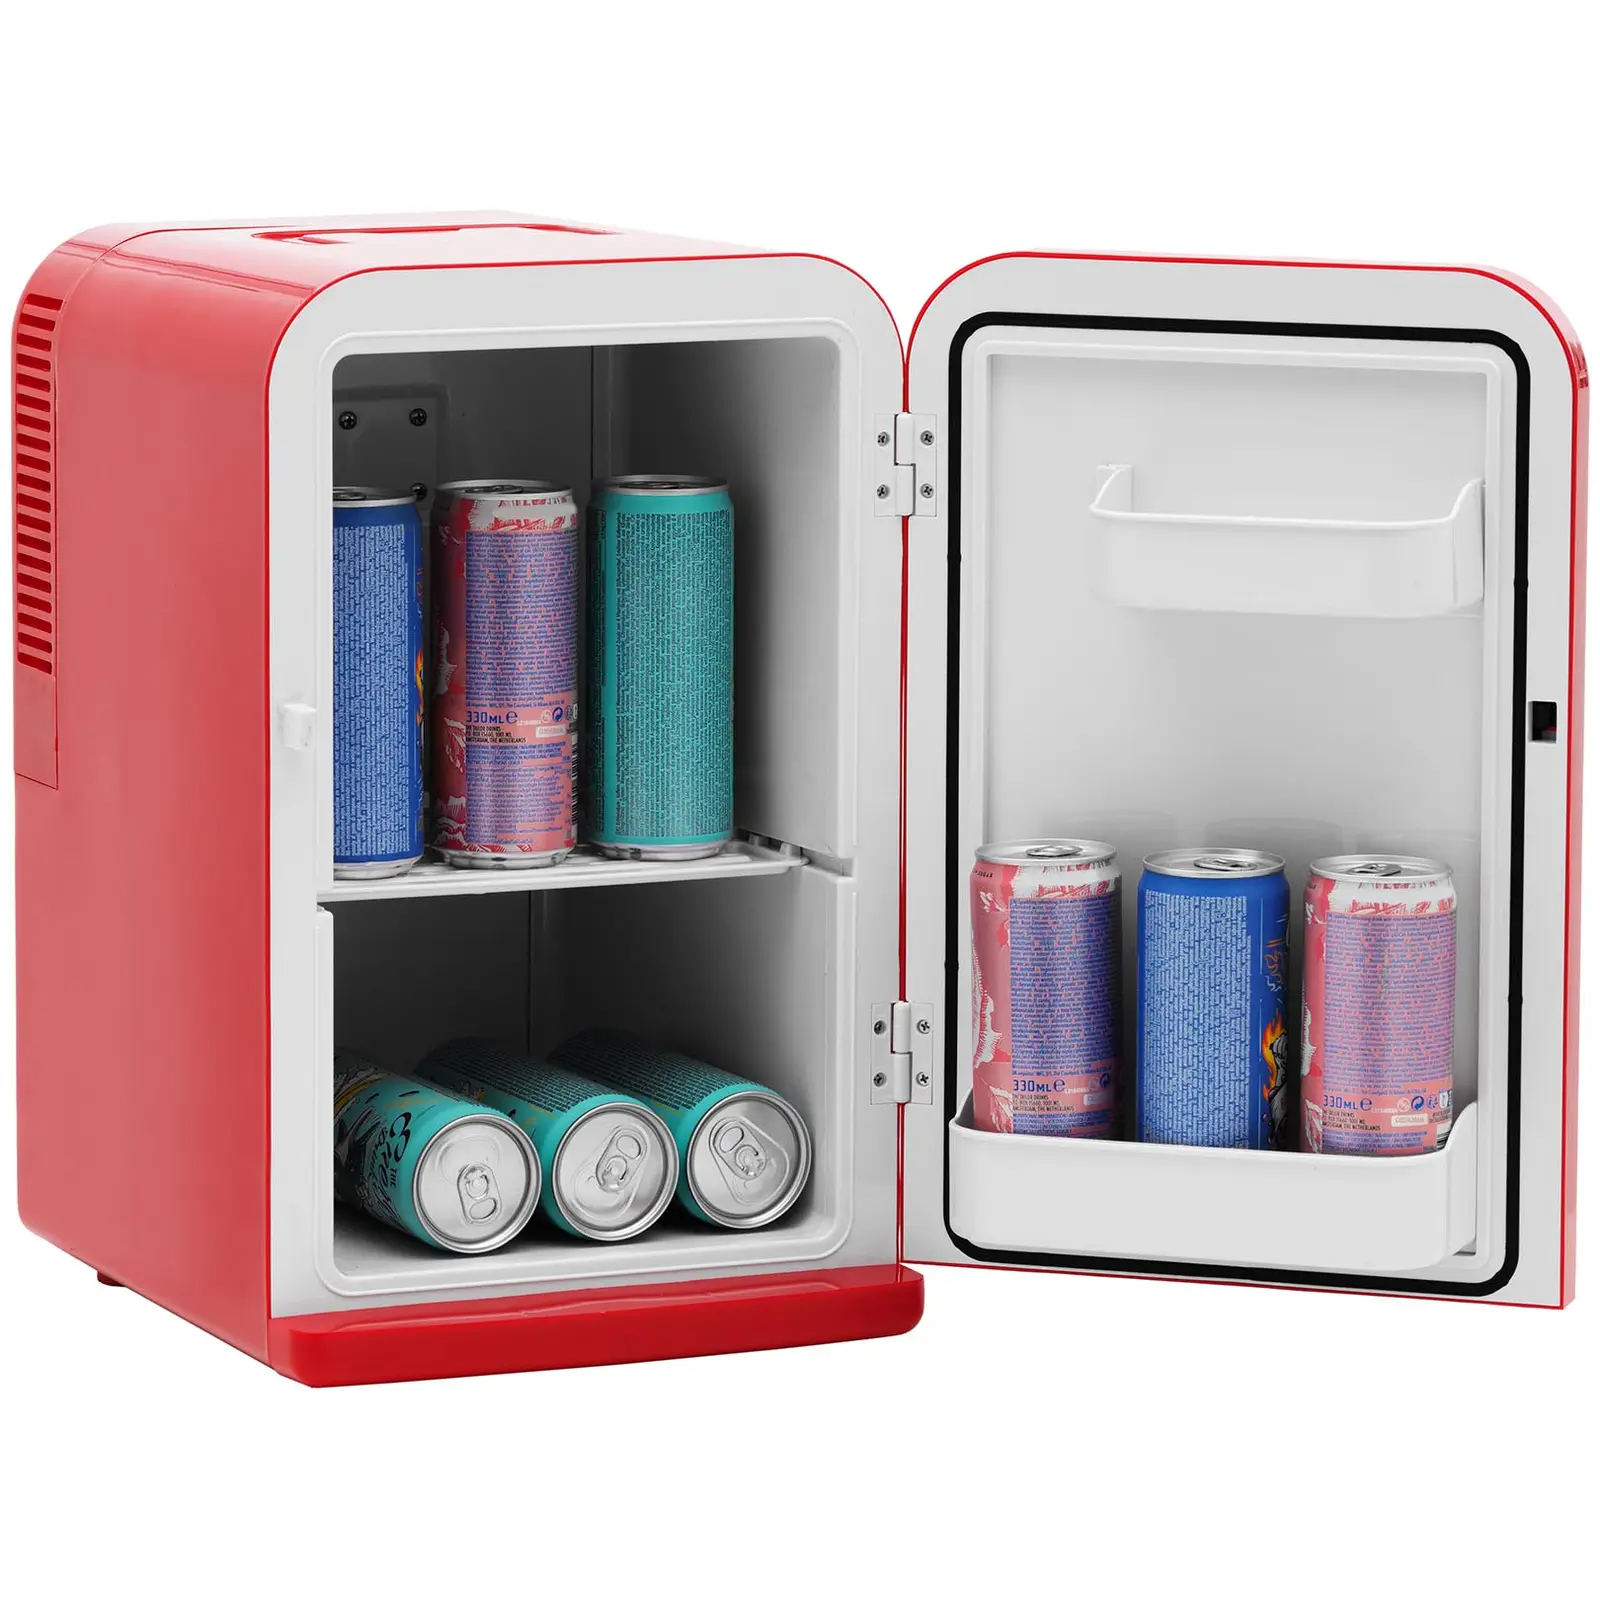 B-zboží Mini chladnička 12 V / 230 V - zařízení 2 v 1 s funkcí ohřevu - 15 l - červená